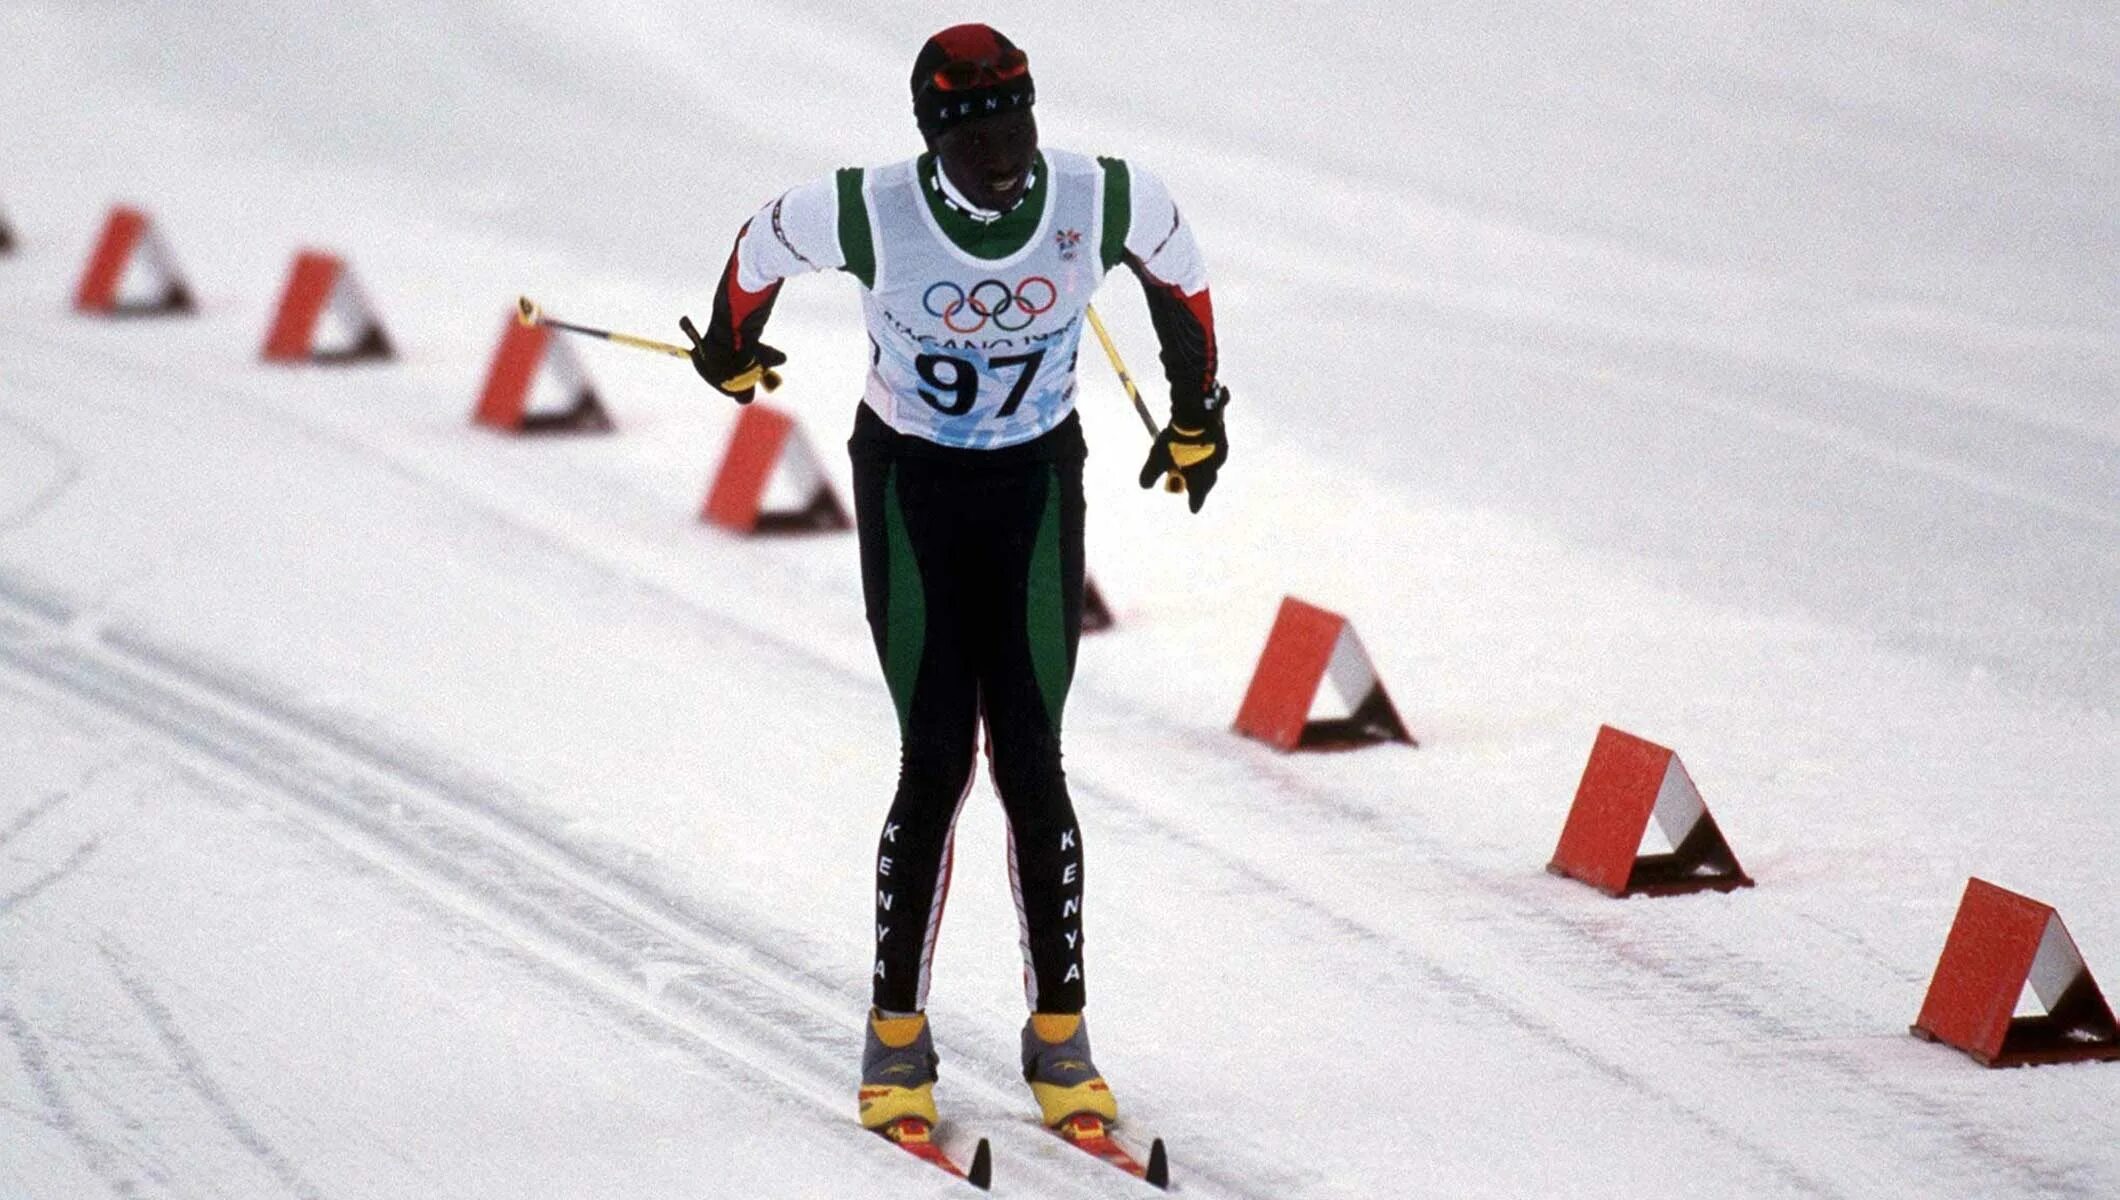 Звуки лыжников. Бьерн Дели лыжник. Nagano 1998 Cross Country Skiing. Чернокожий лыжник на Олимпиаде.